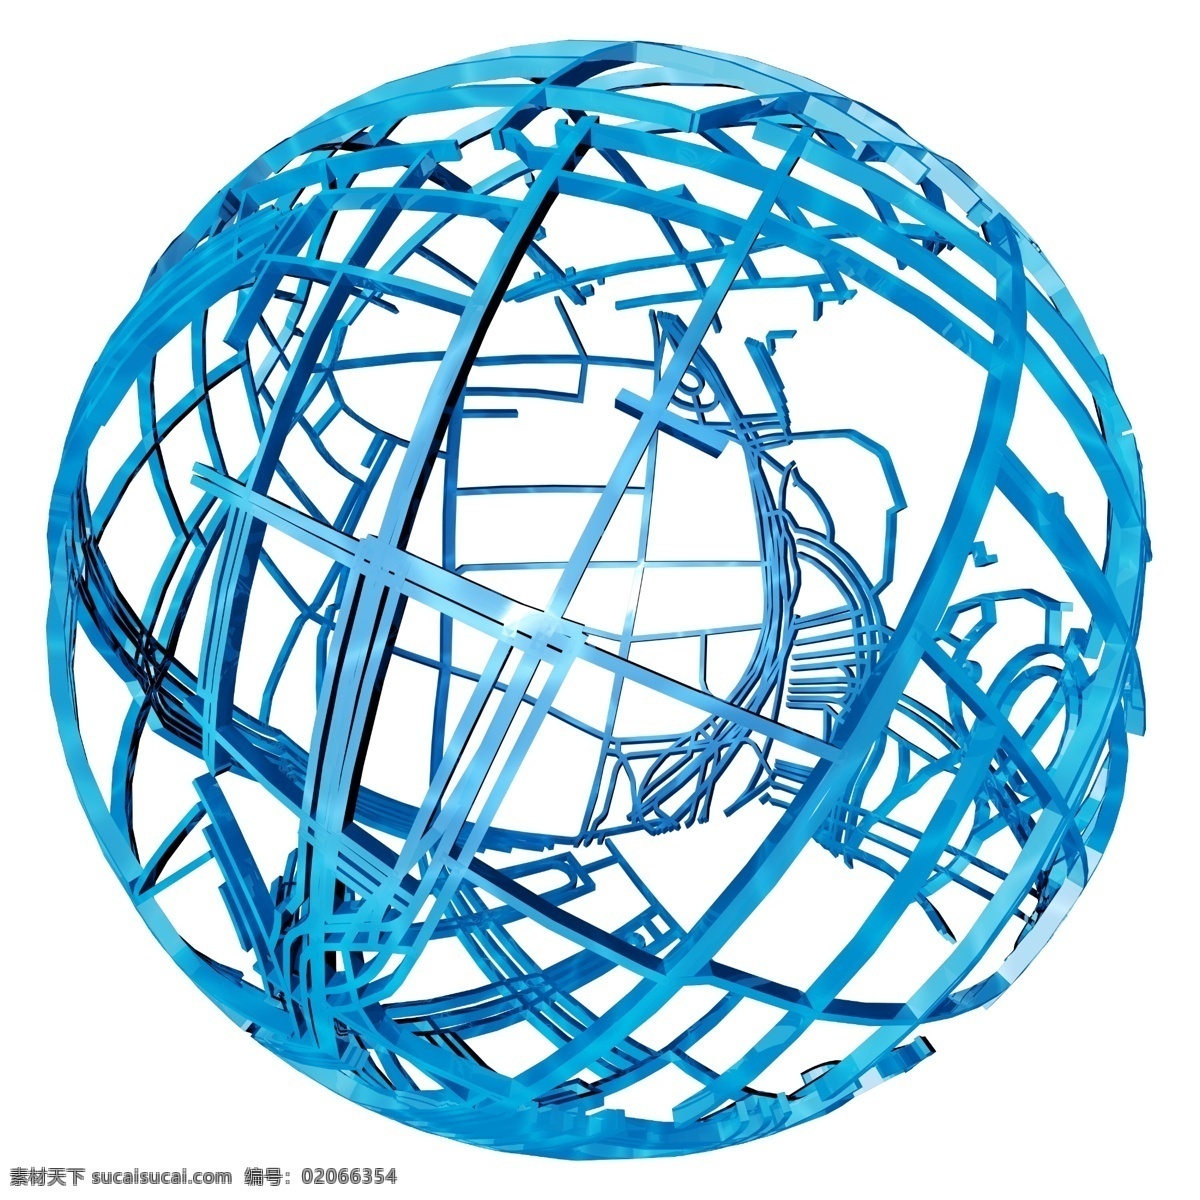 世界 圆形 圆球 框架 蓝色 科技 立体 png格式